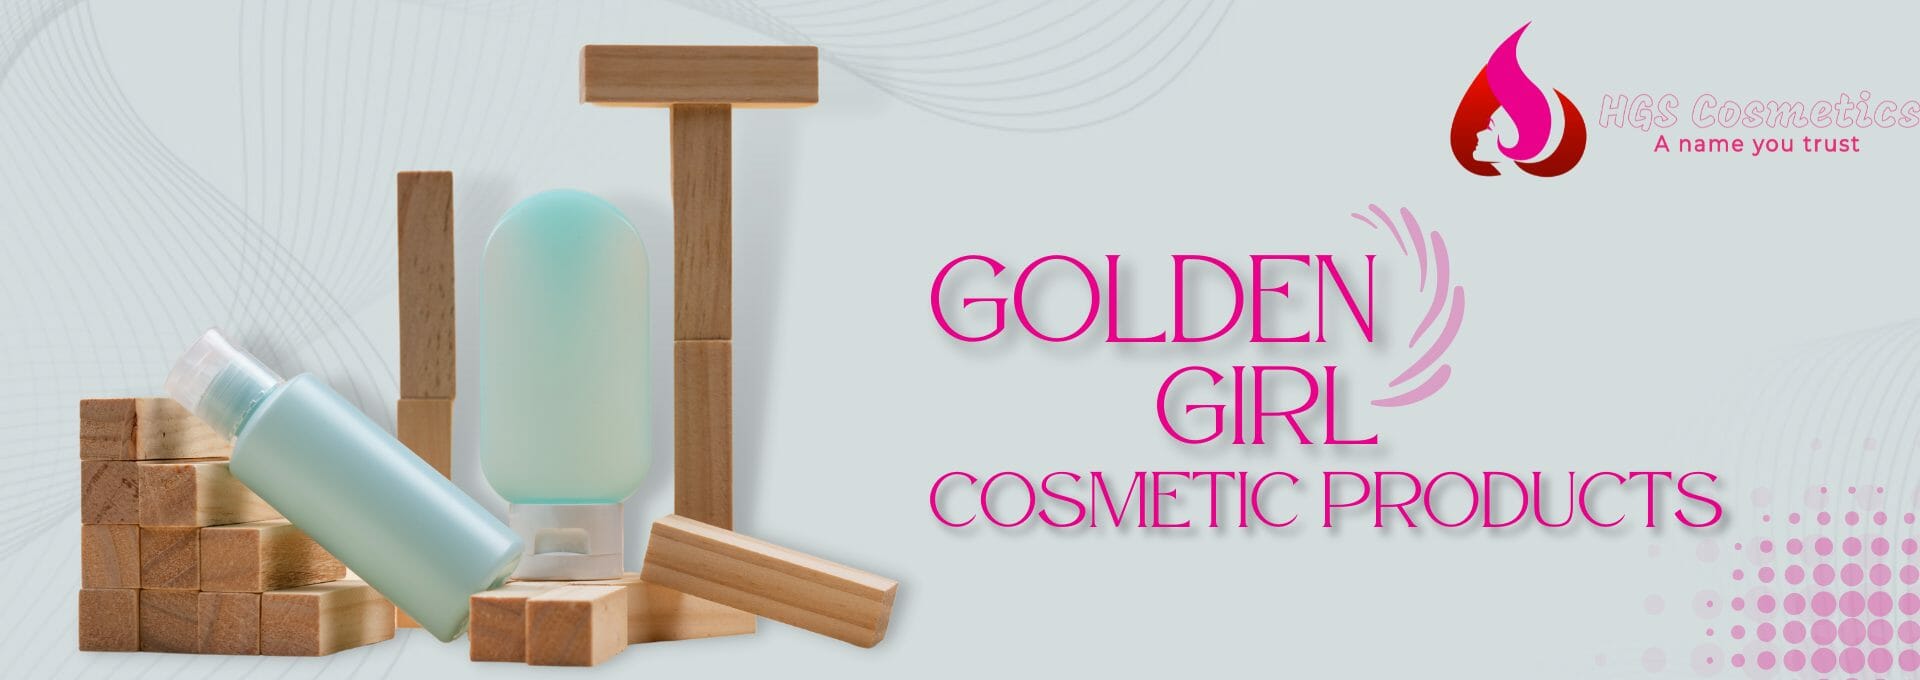 Buy Original Golden Girl Products Online in Pakistan @ HGS Cosmetics